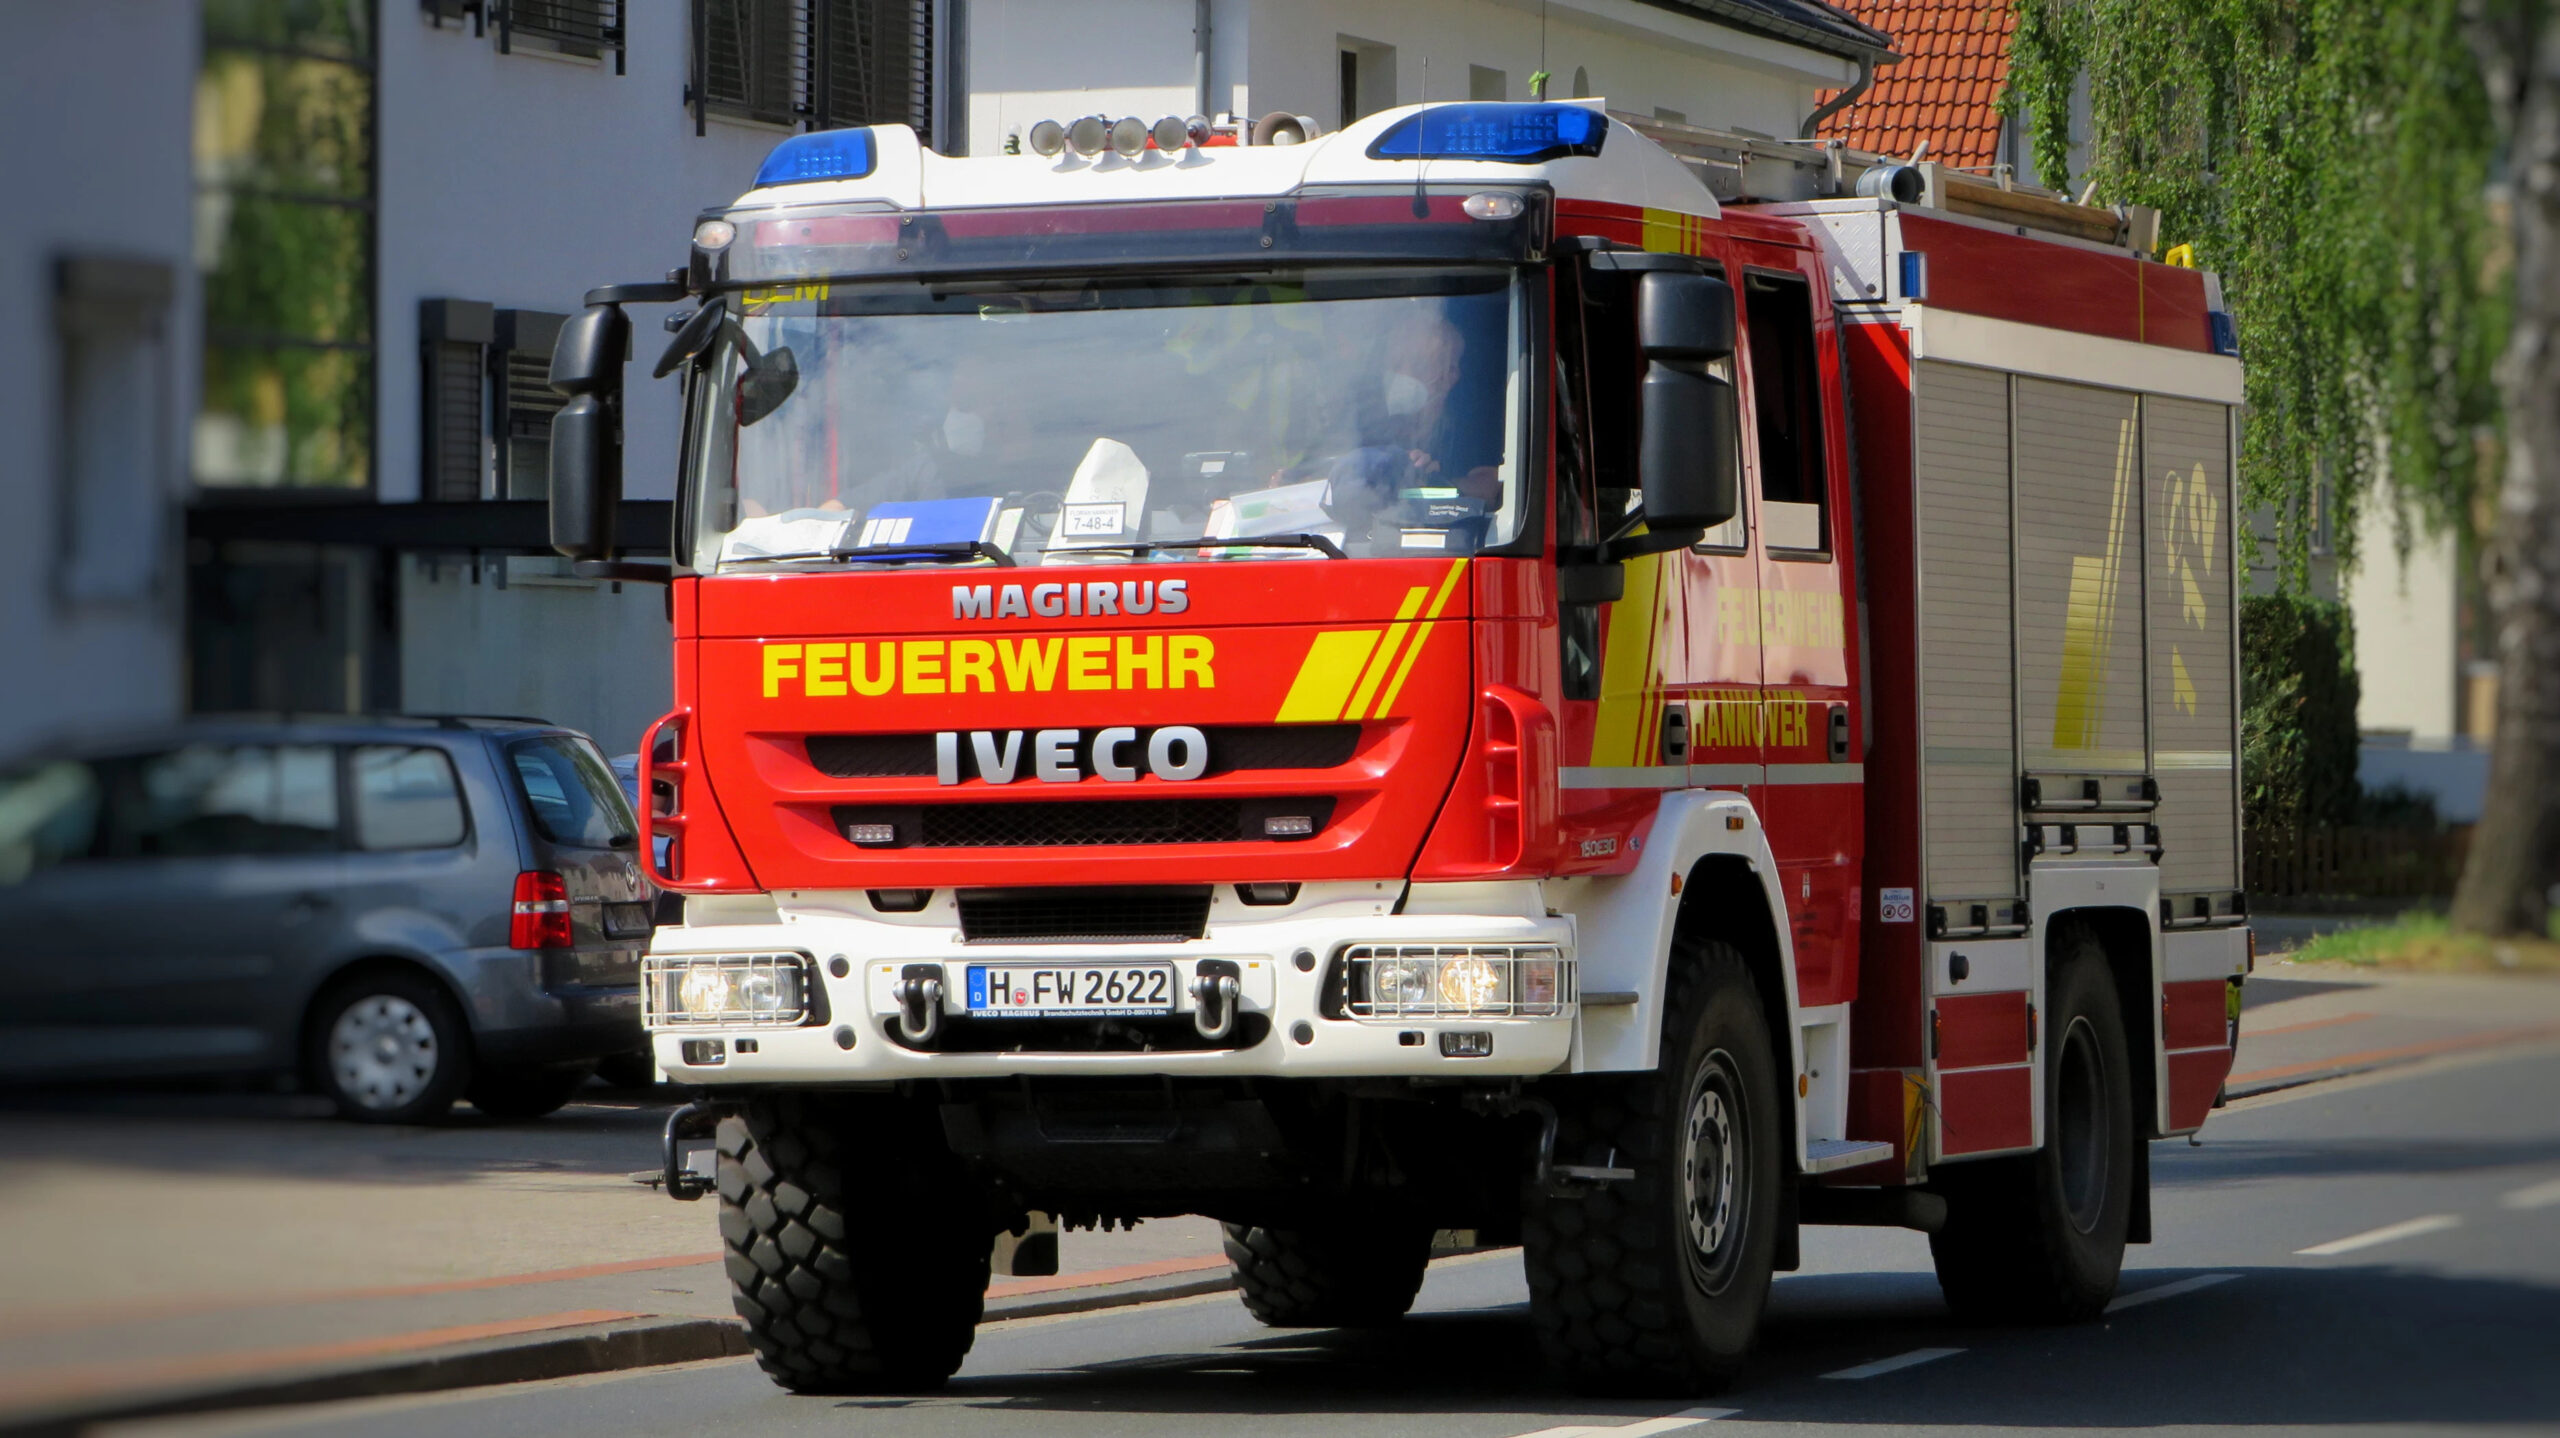 Rhein-Neckar-Kreis: Brand eines Fahrzeuges auf B291 bei Schwetzingen-Oftersheim, Rettungskräfte im Einsatz